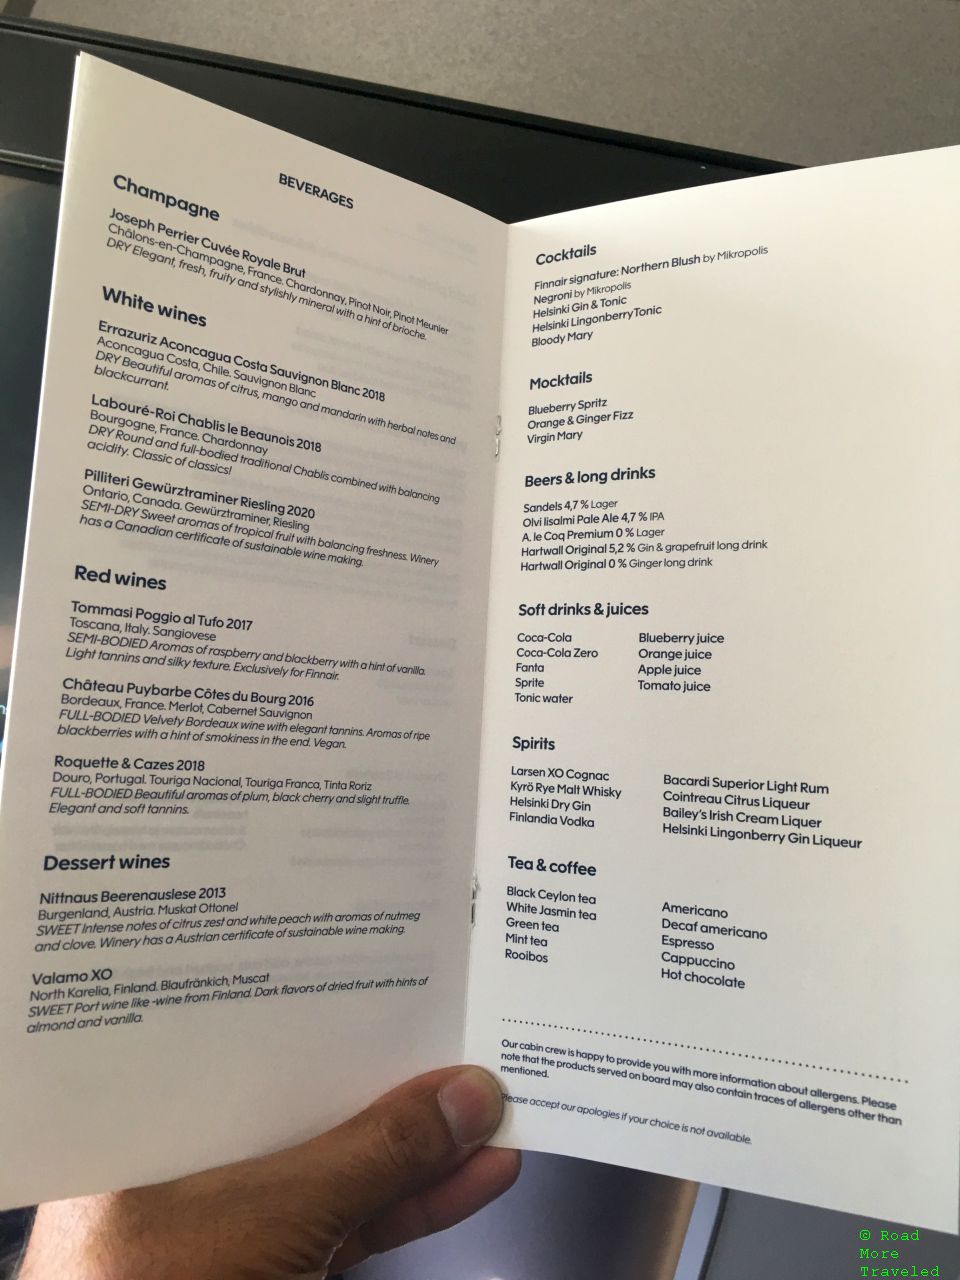 Finnnair A350-900 Business Class - menu